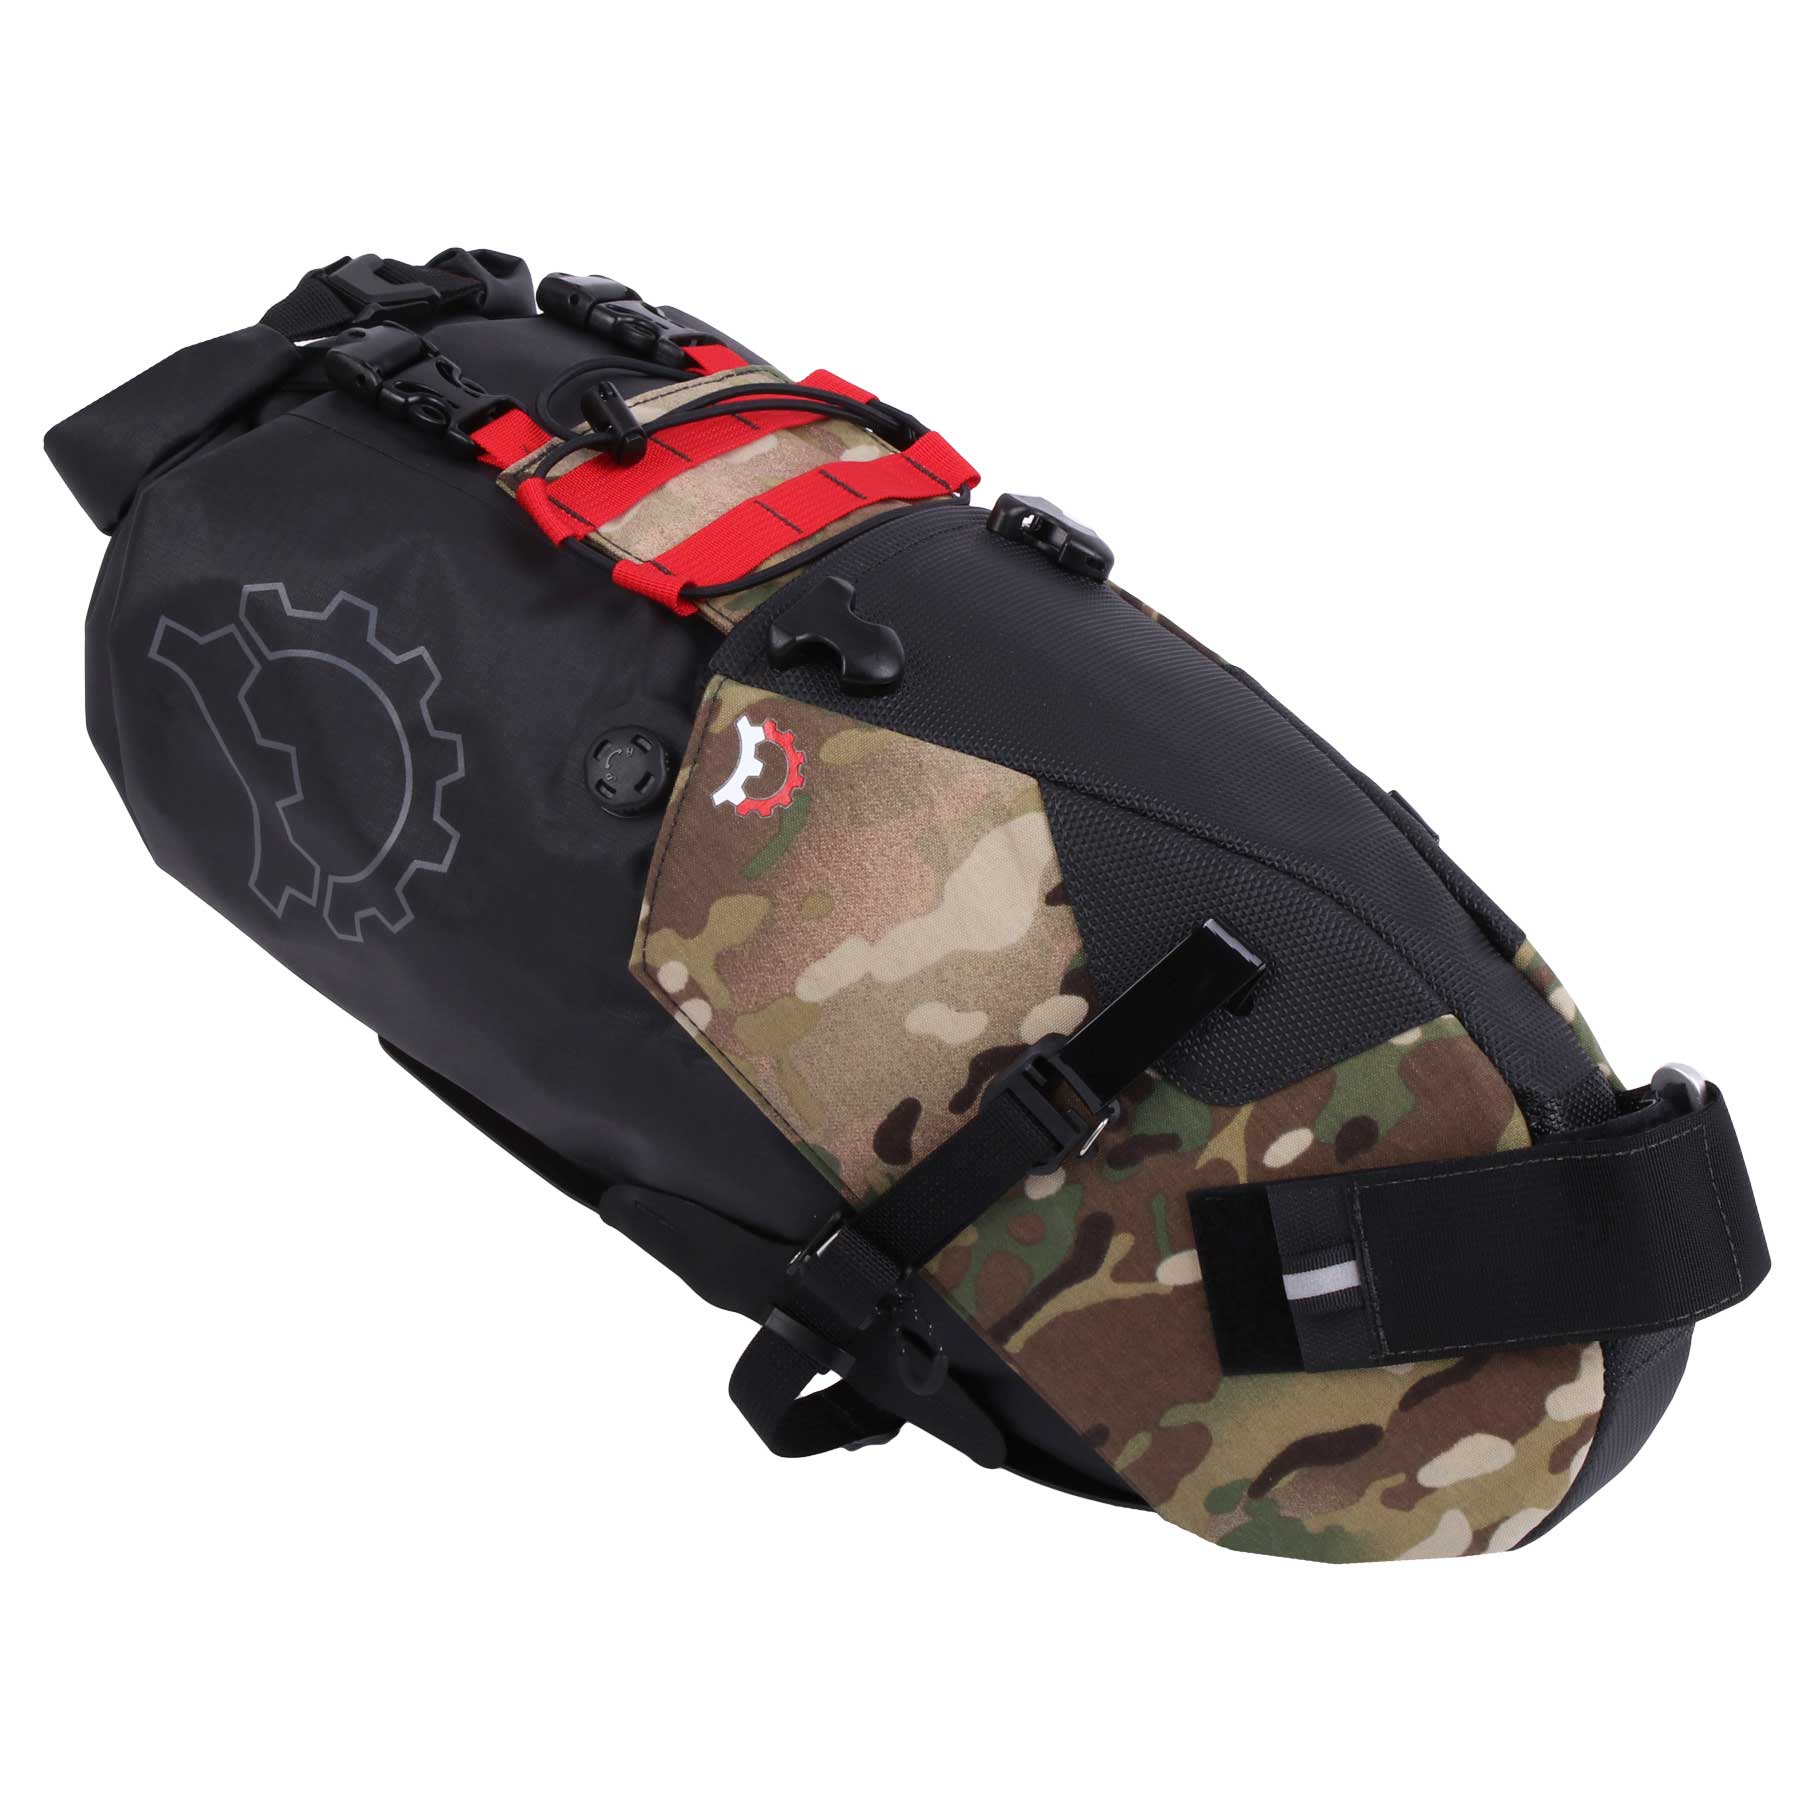 Productfoto van Revelate Designs Terrapin System 14L Seat Bag - multi camo